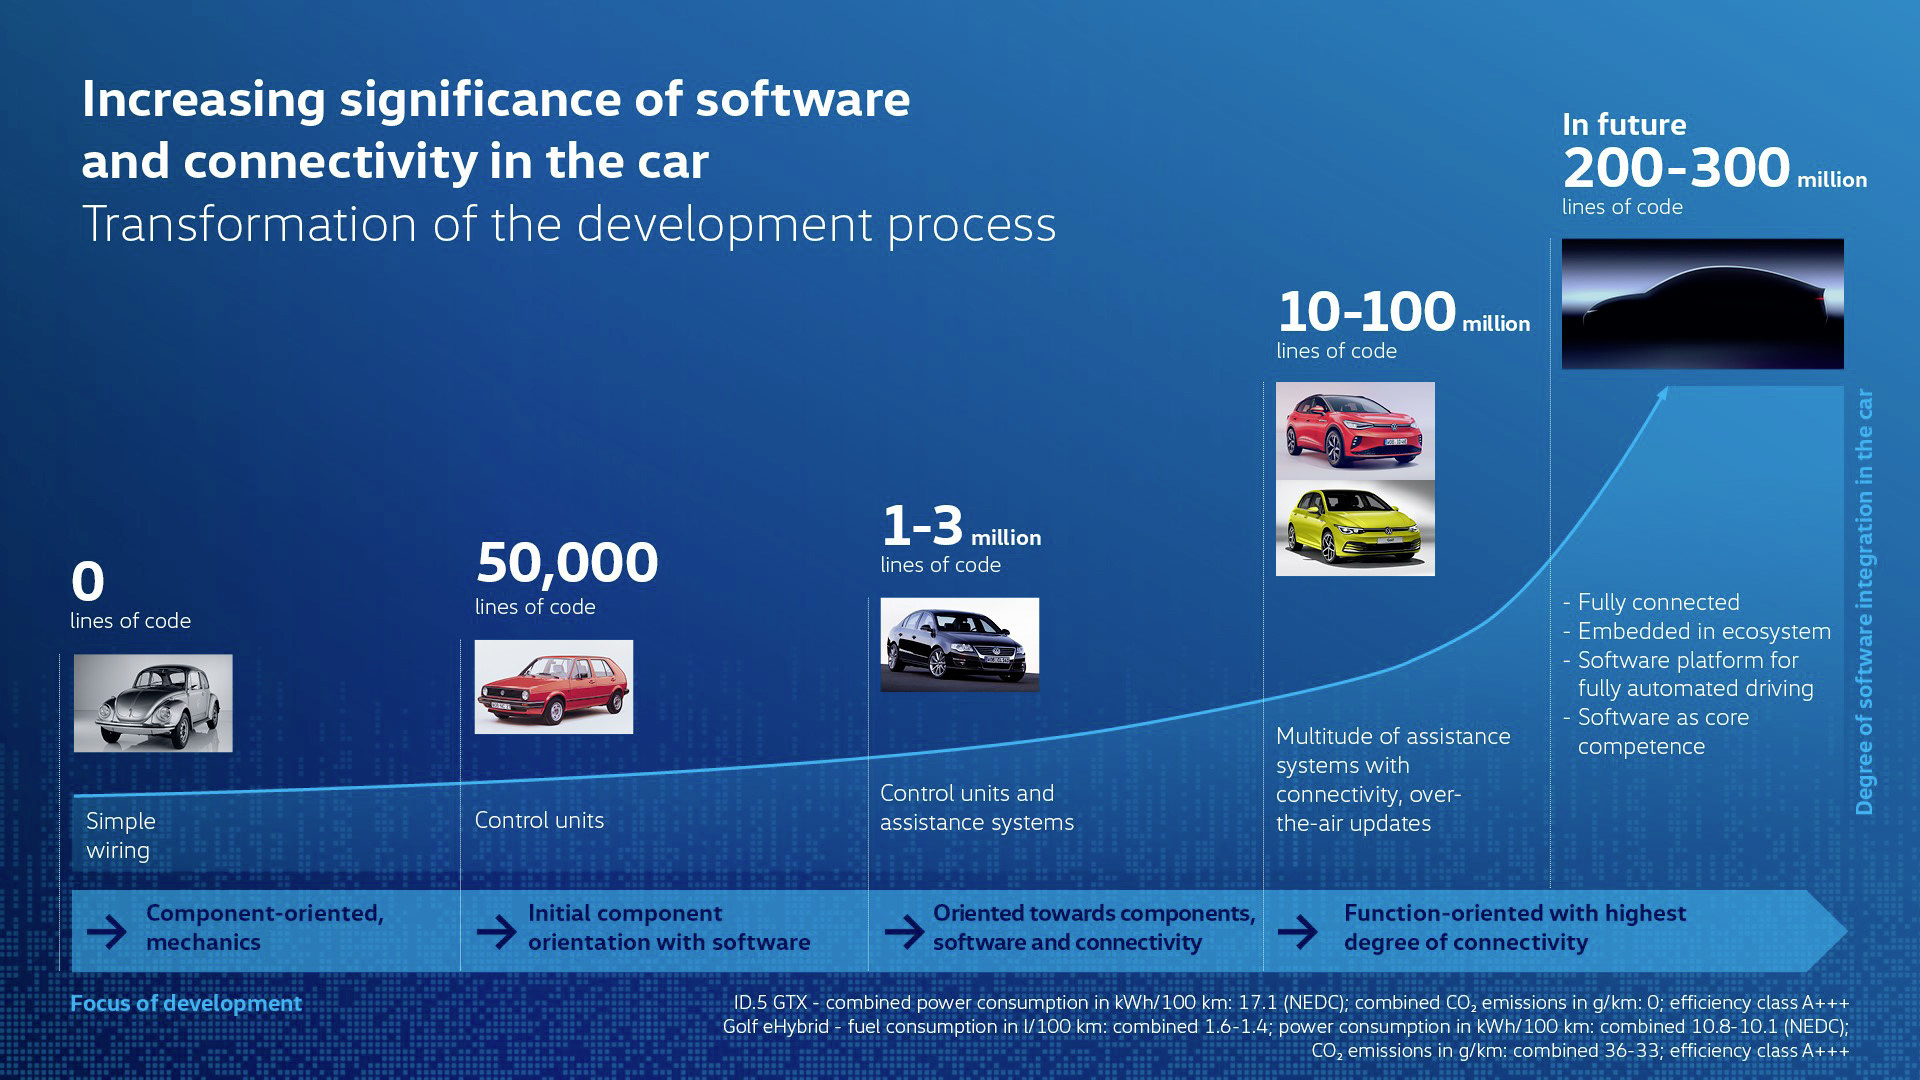 Volkswagen - Trinity - desarrollo tecnico - Thomas Ulbrich - software - SSP - Sandkamp